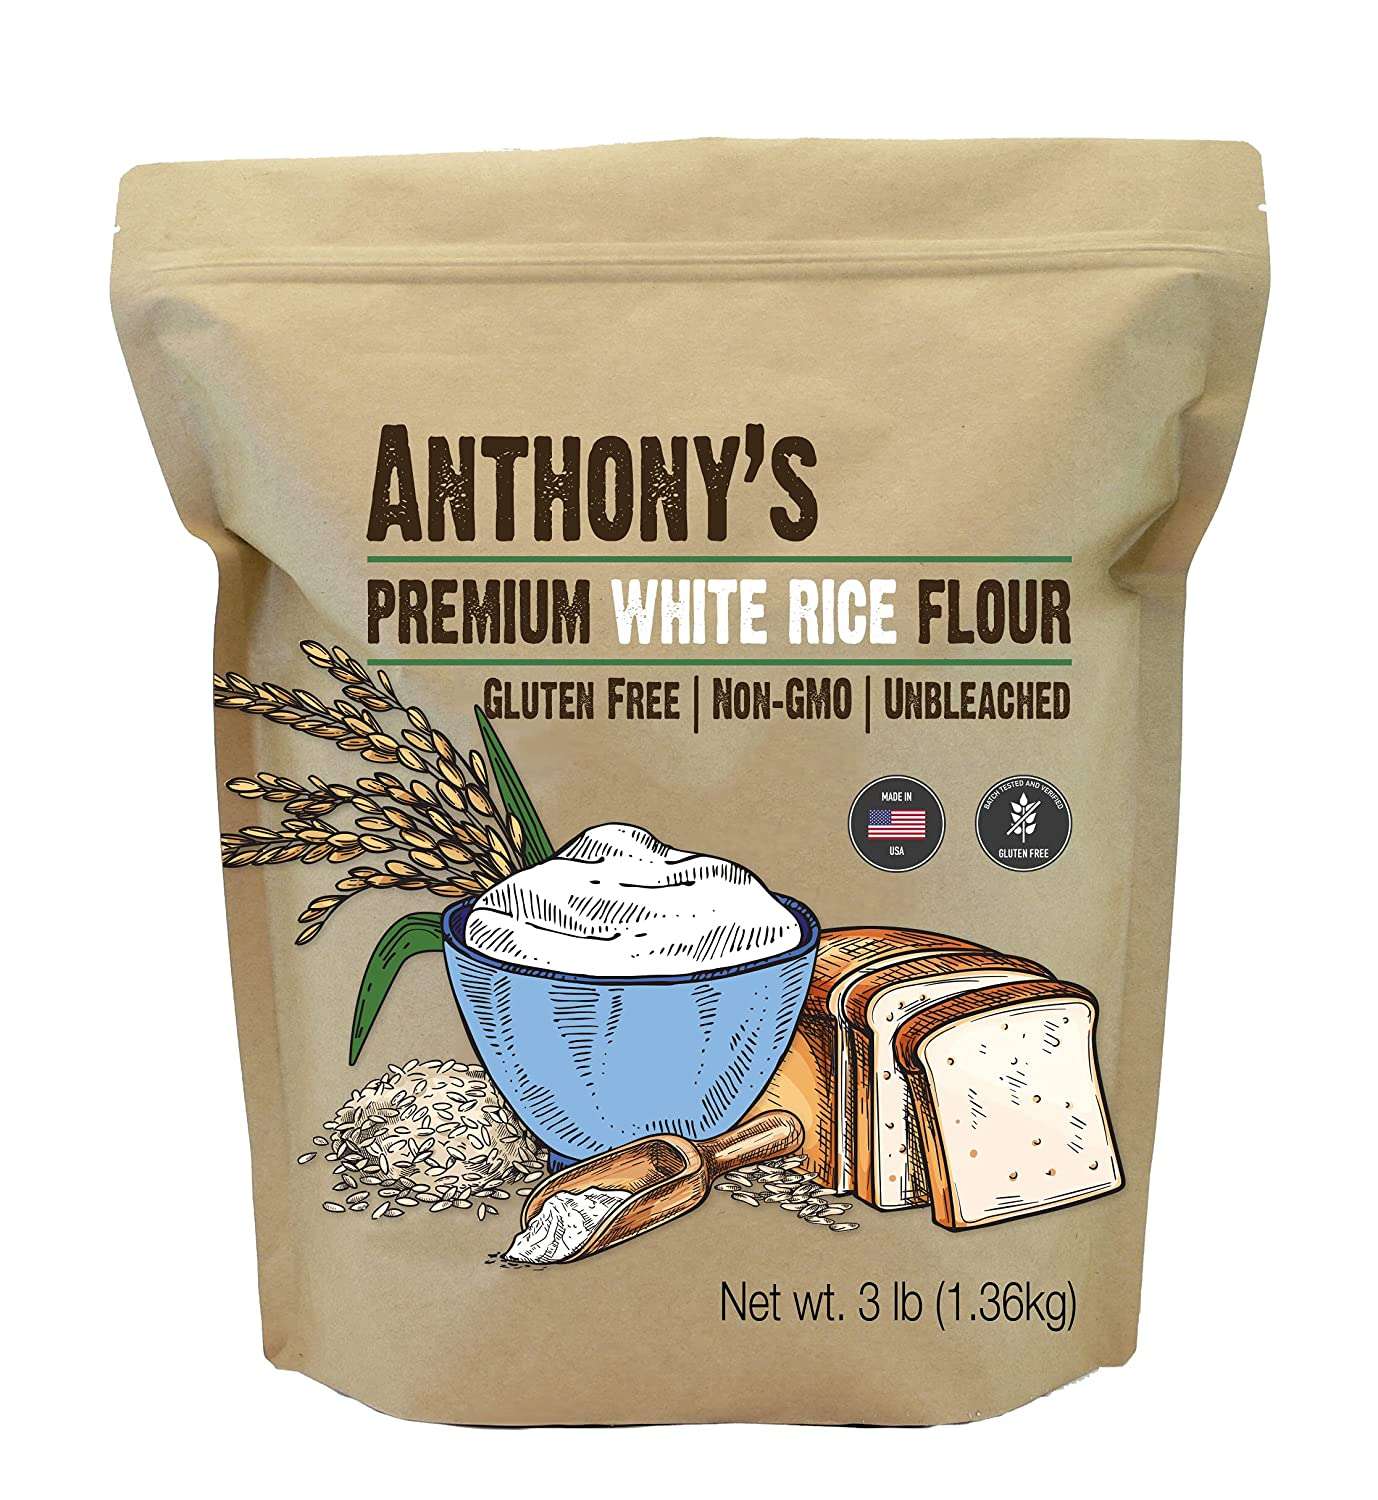 Anthony’s Premium White Rice Flour, 3 lb, Gluten Free, Non GMO, Unbleached